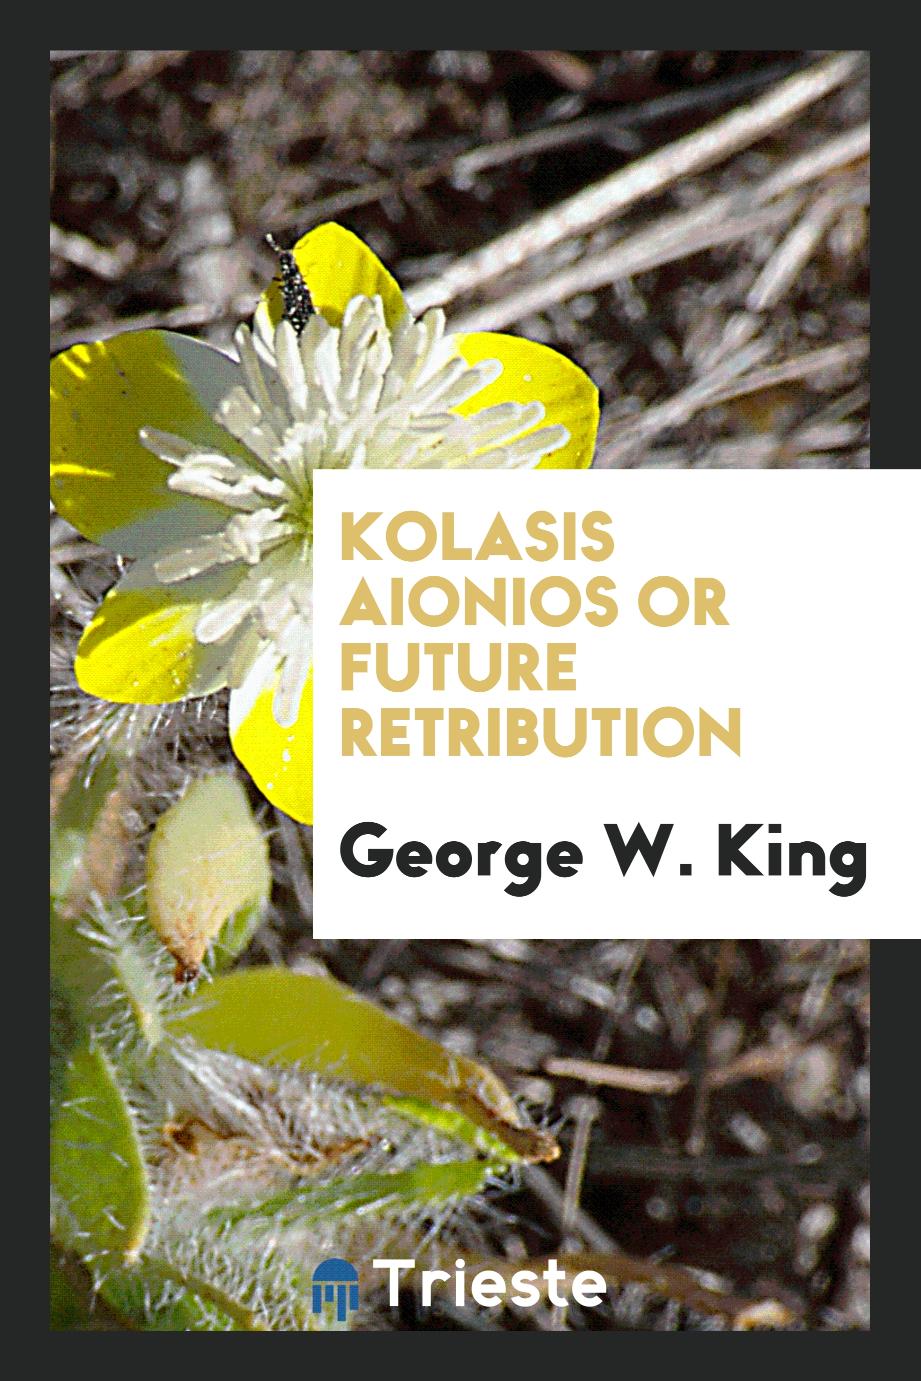 Kolasis aionios or Future retribution